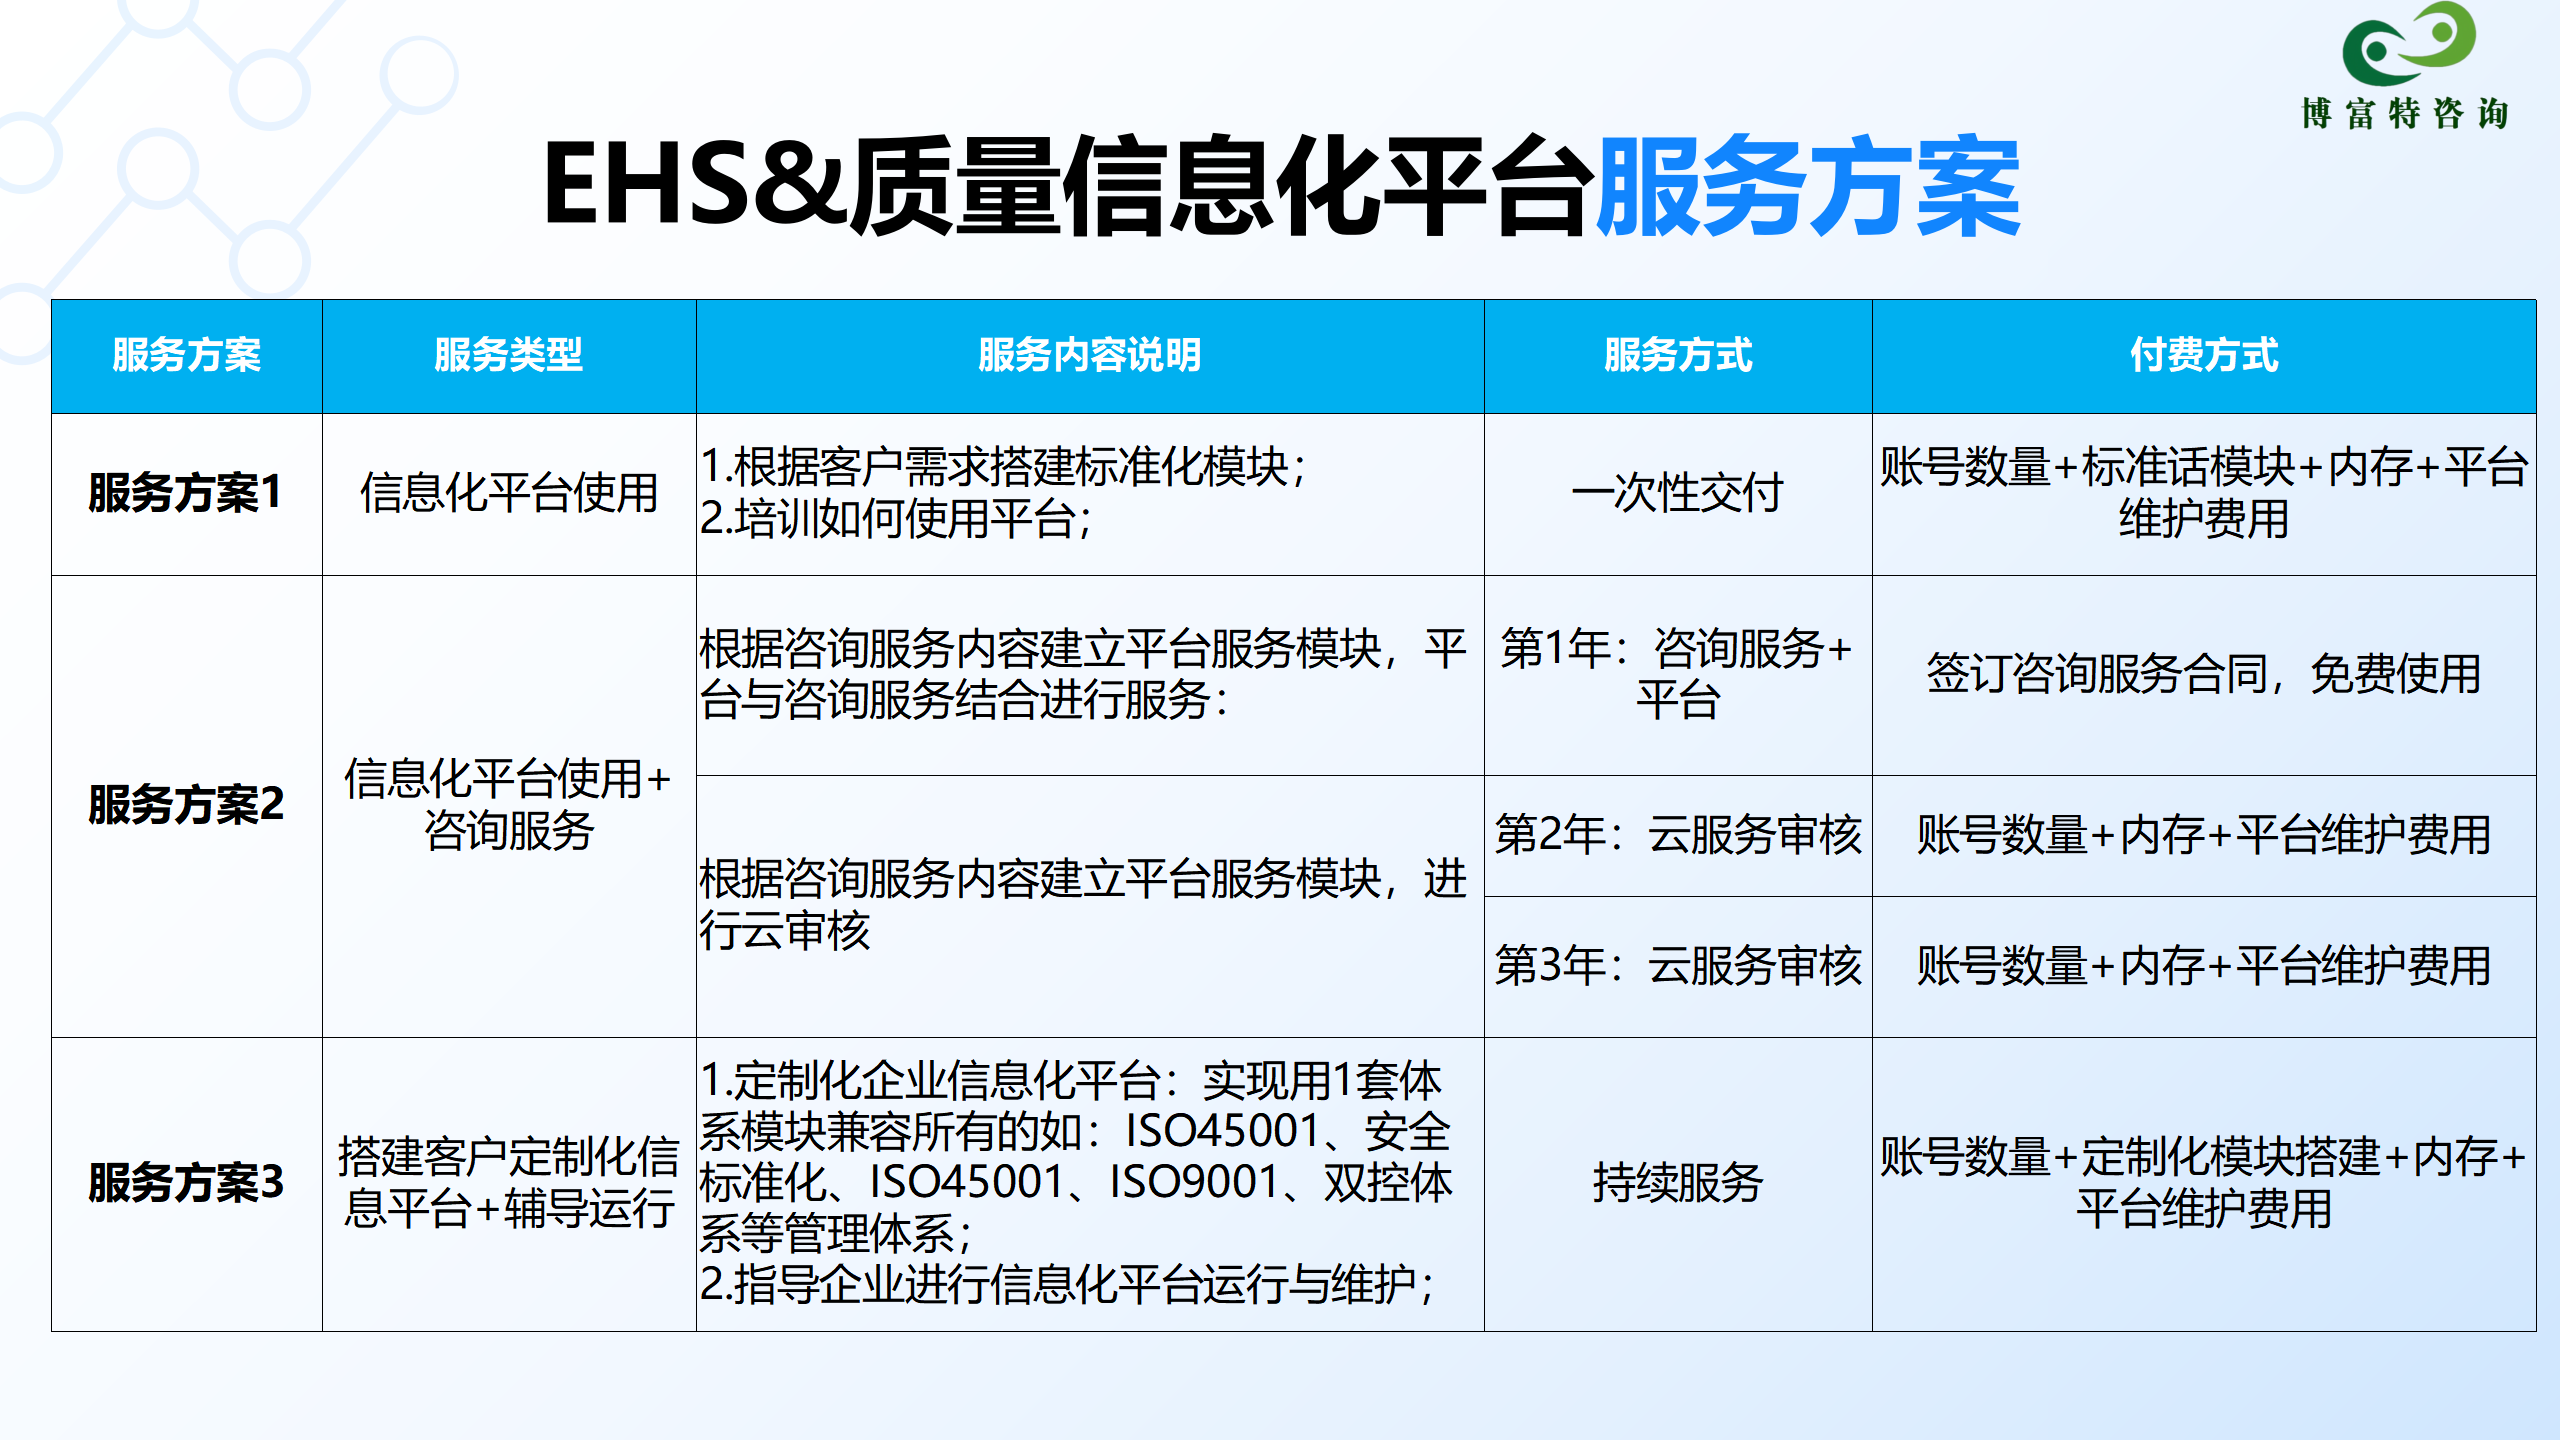 EHS&质量信息化平台业务介绍_06.png